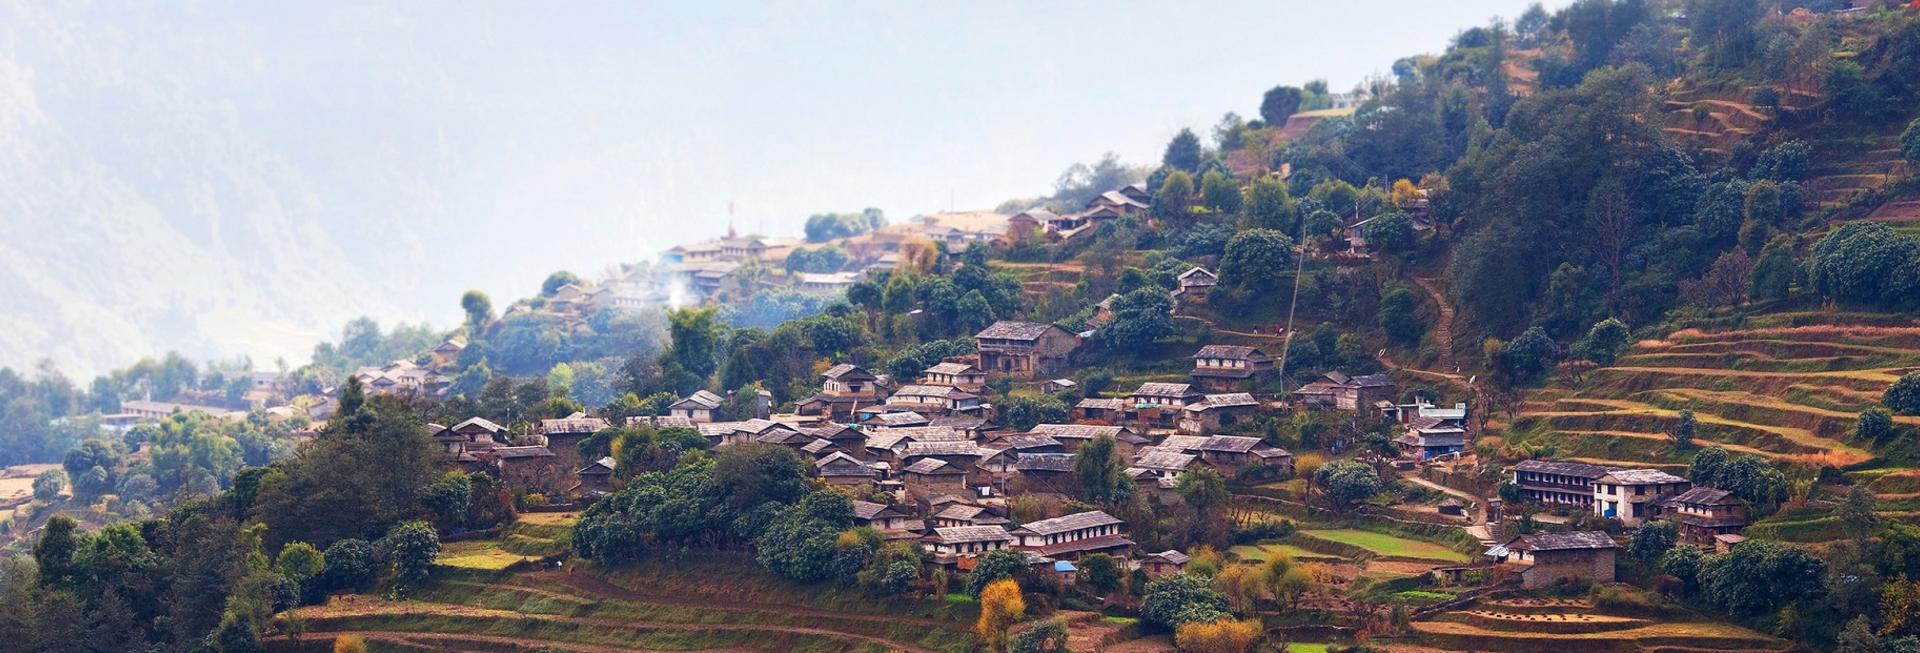 Ghandruk, Nepal